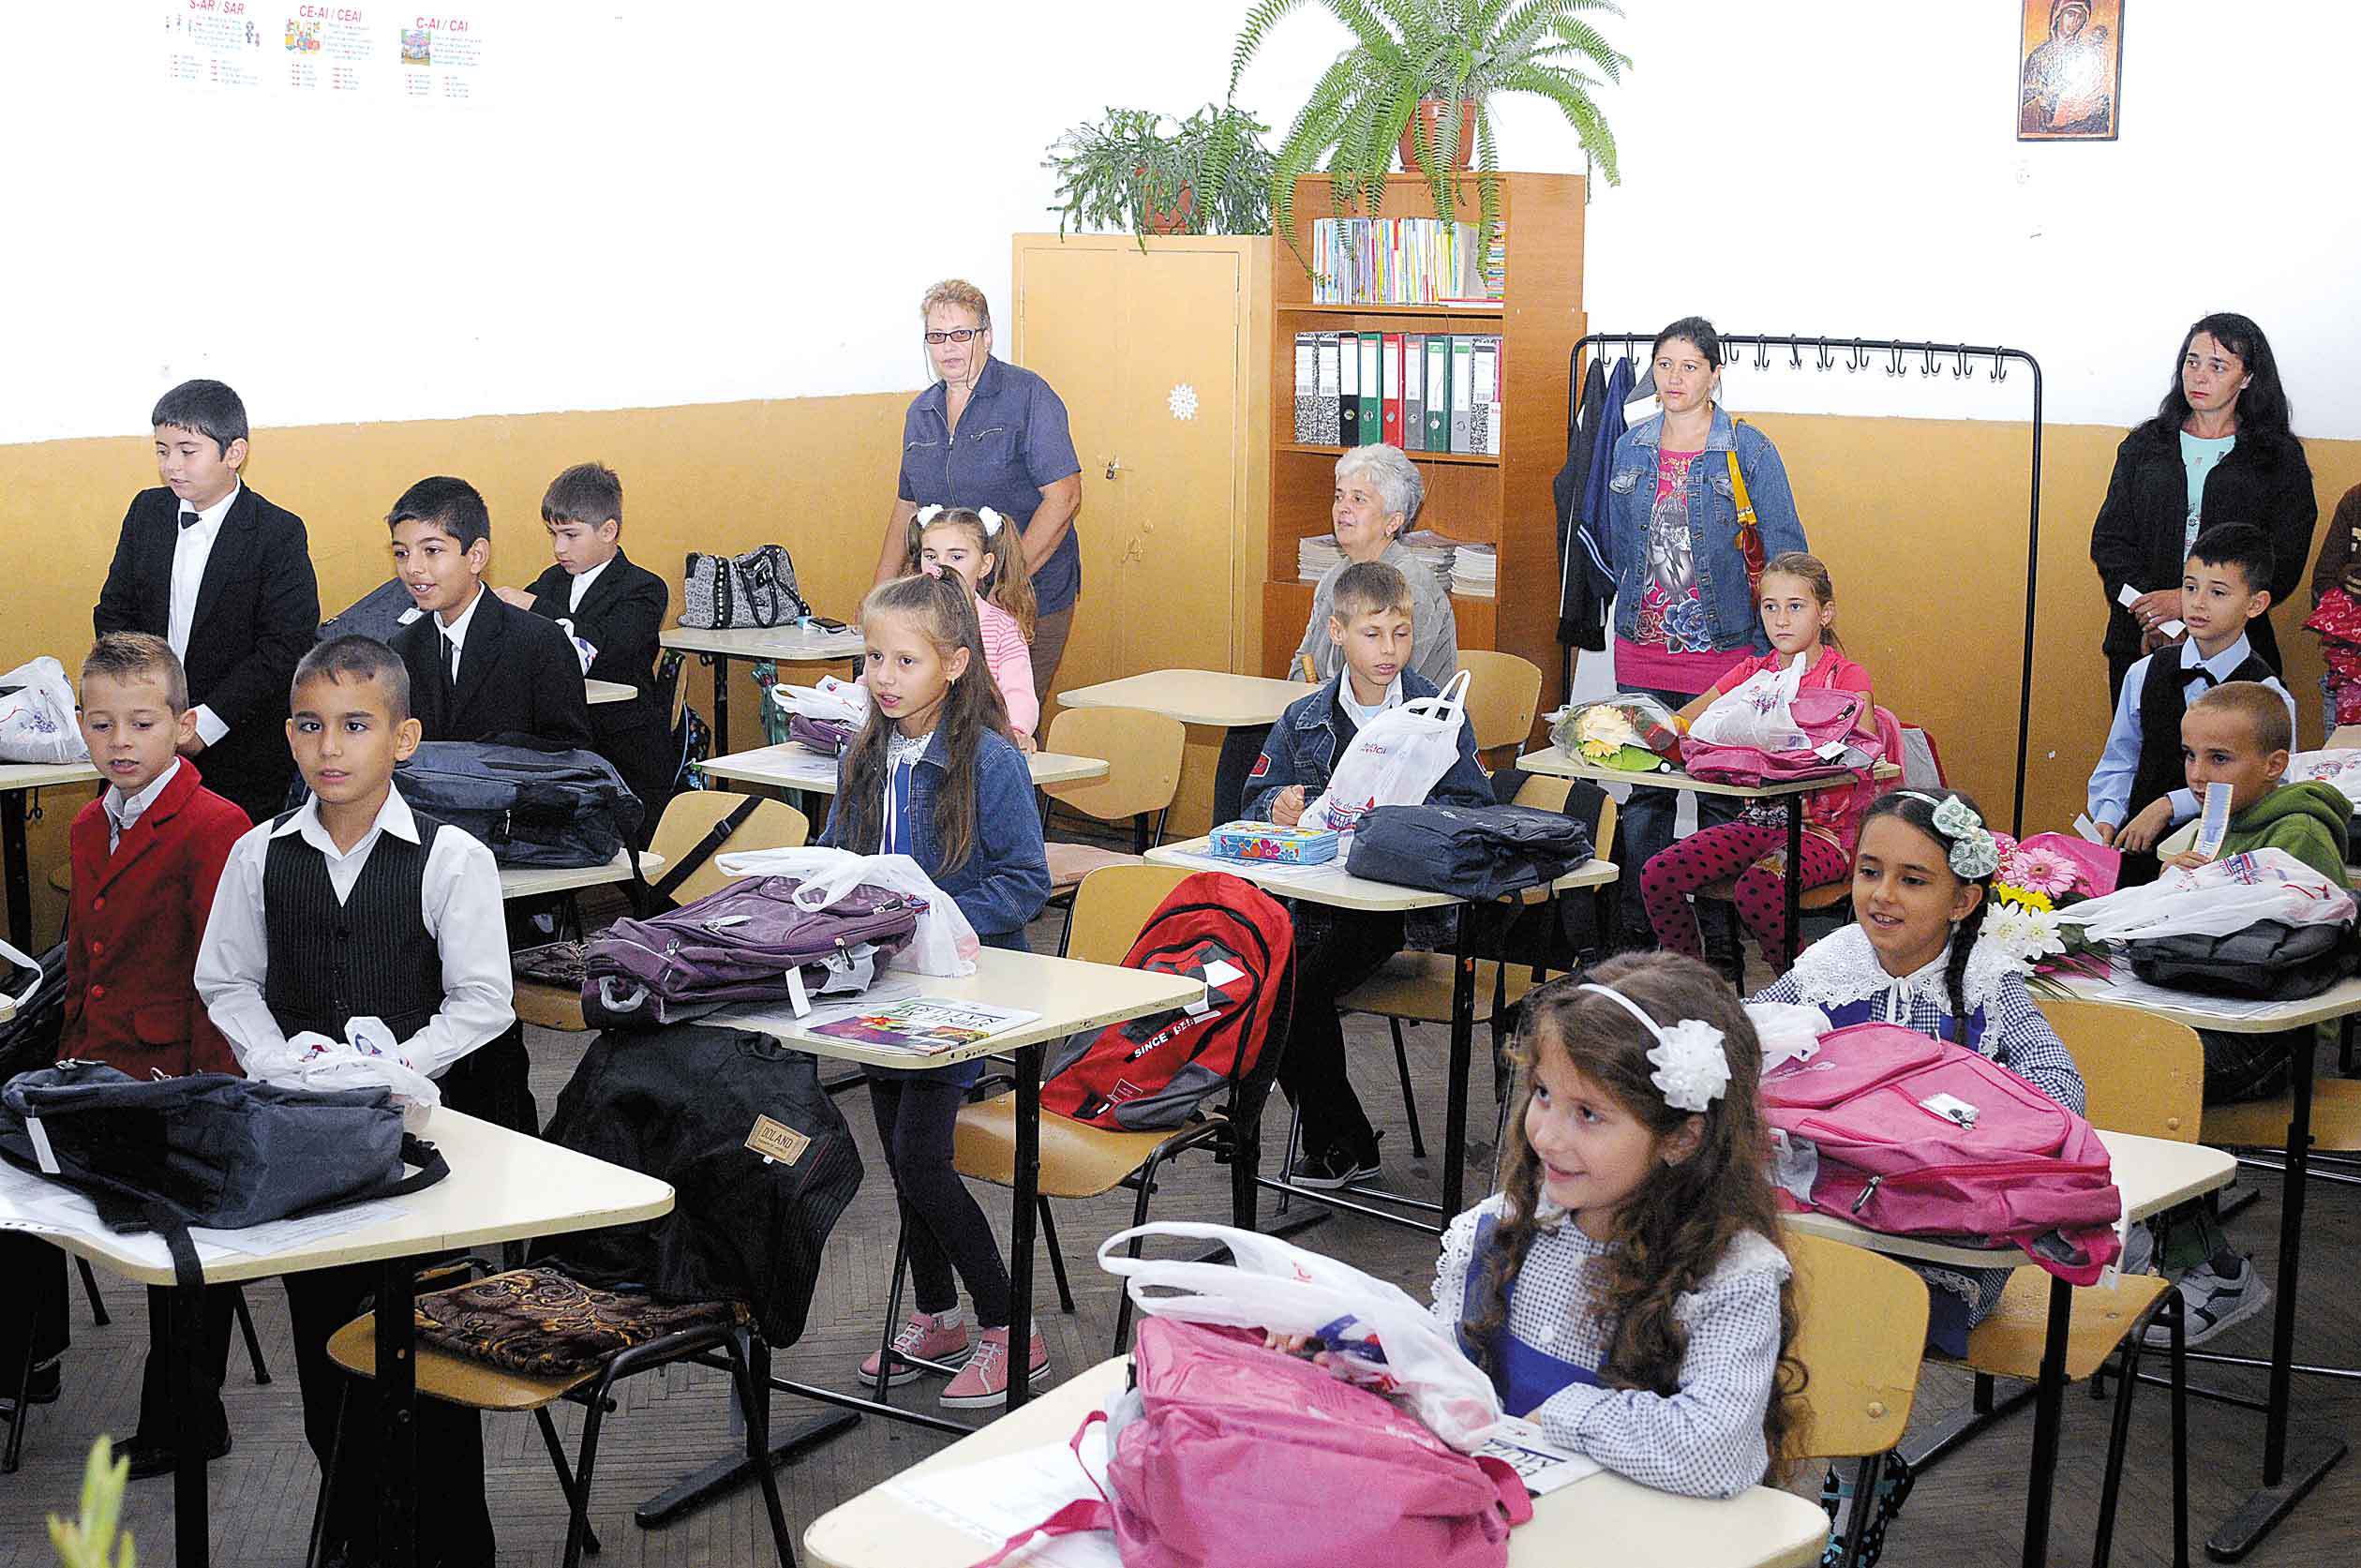 La nouă şcoli din Bucureşti, copiii au ajuns să meargă în trei schimburi la şcoală, iar în 80% din cazuri merg în două schimburi. Clasele au şi 34 de elevi